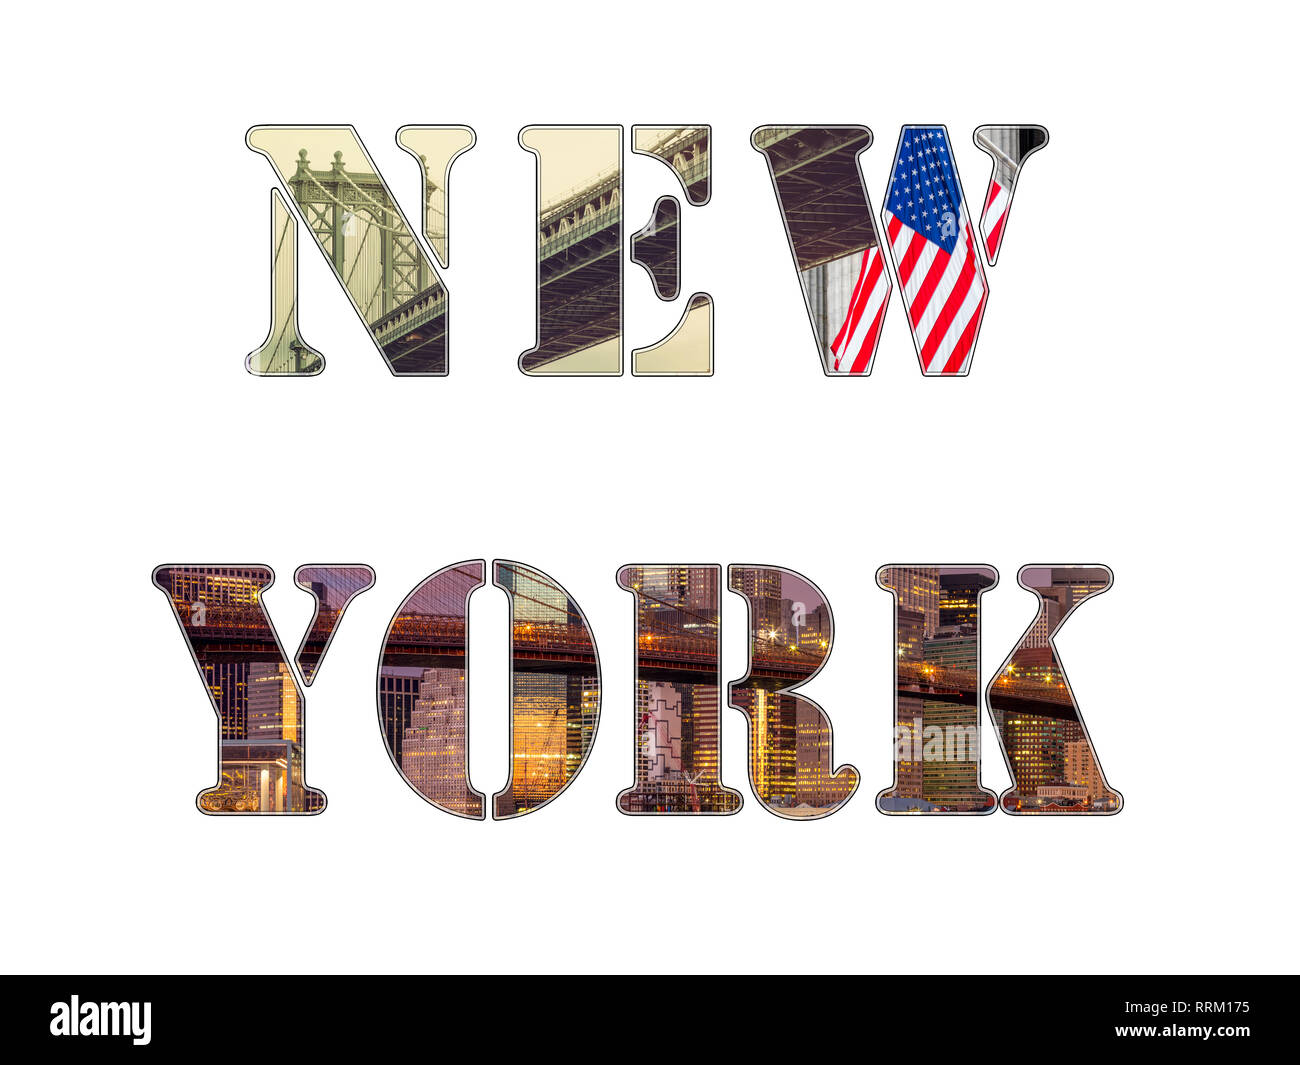 Des lettres de la ville de New York - photo collage de différents endroits célèbres, des monuments et des zones de New York, isolated on white Banque D'Images